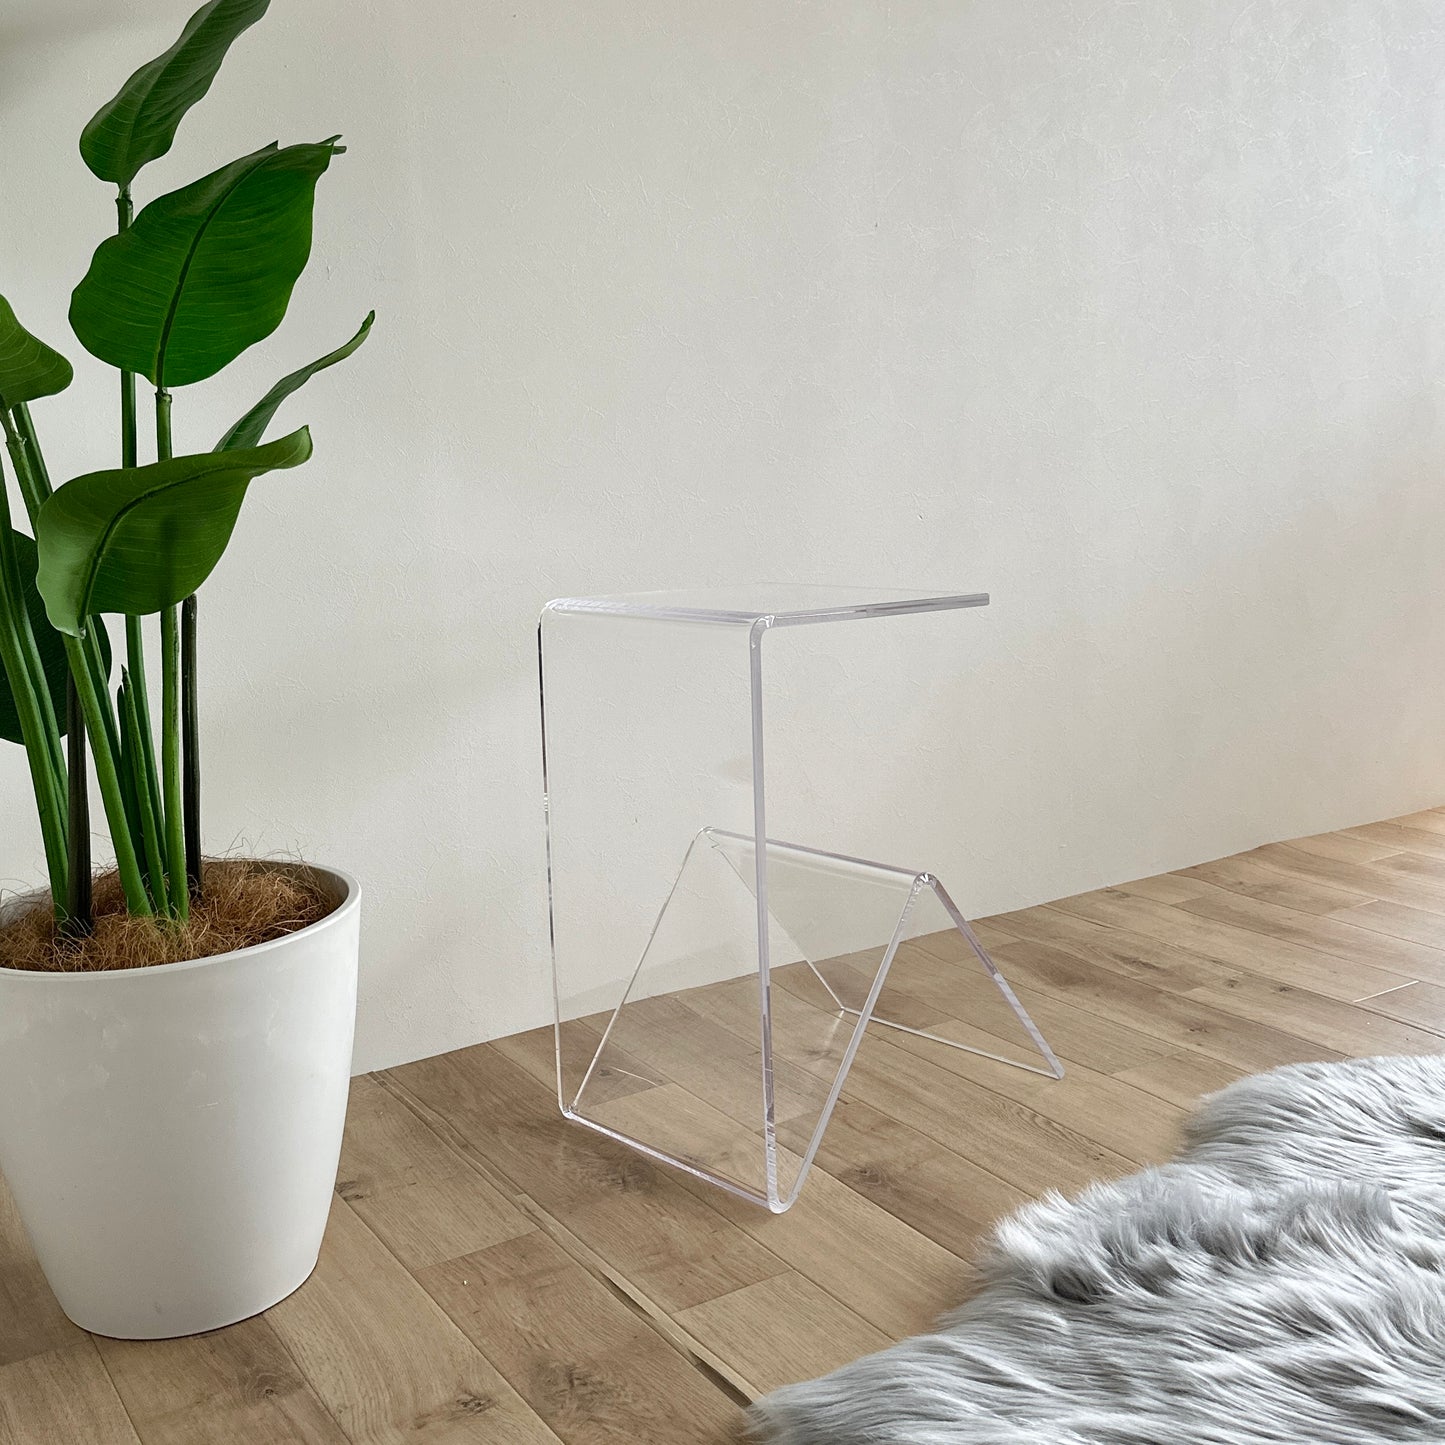 ユニークな形の透明なサイドテーブル